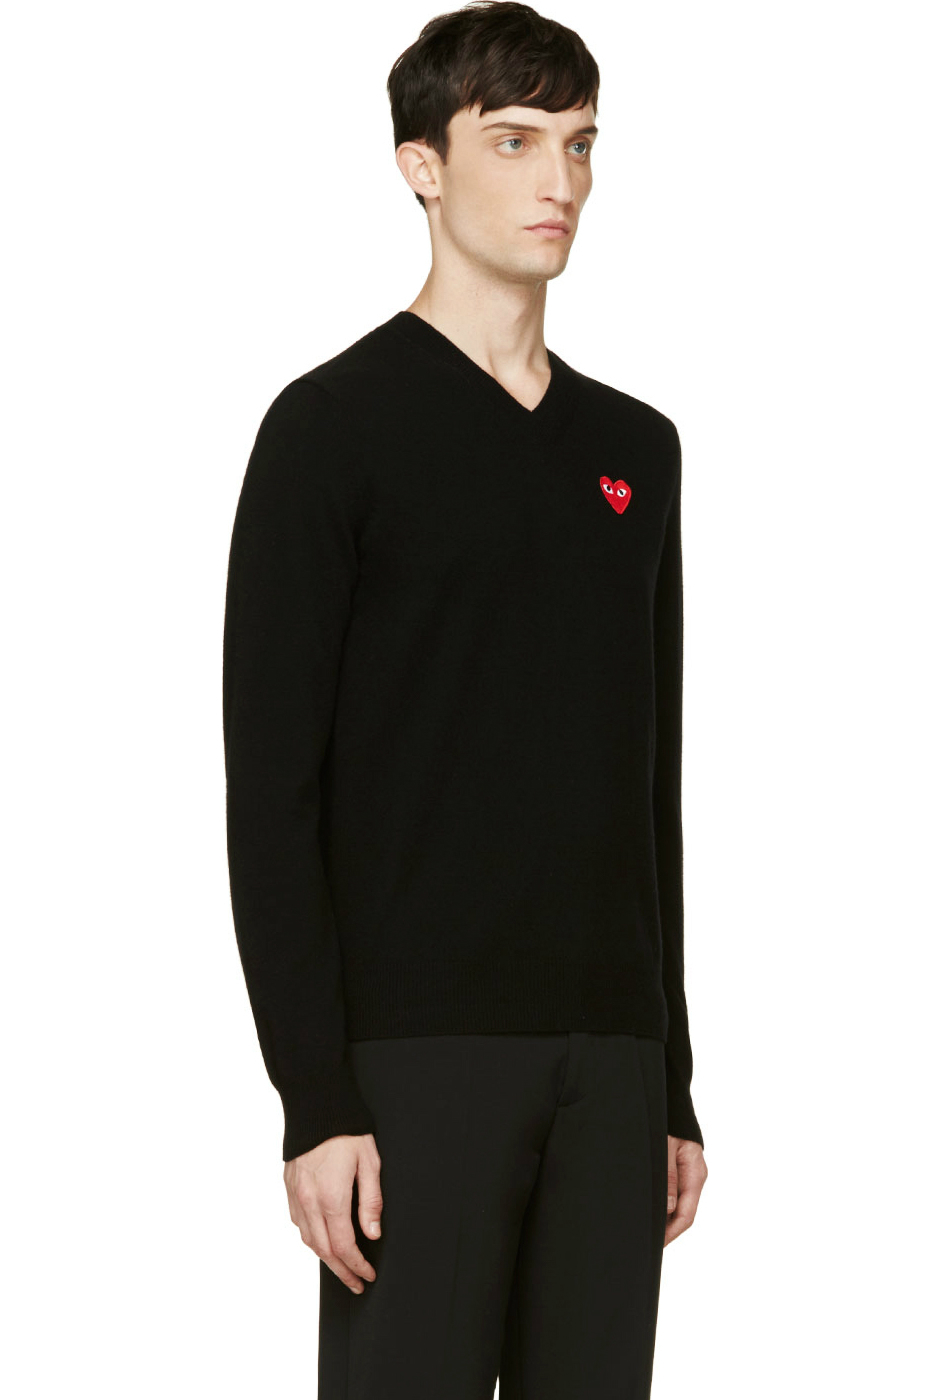 Черный мужской шерстяной свитер с V-вырезом и красным сердцем, Comme des Garcons